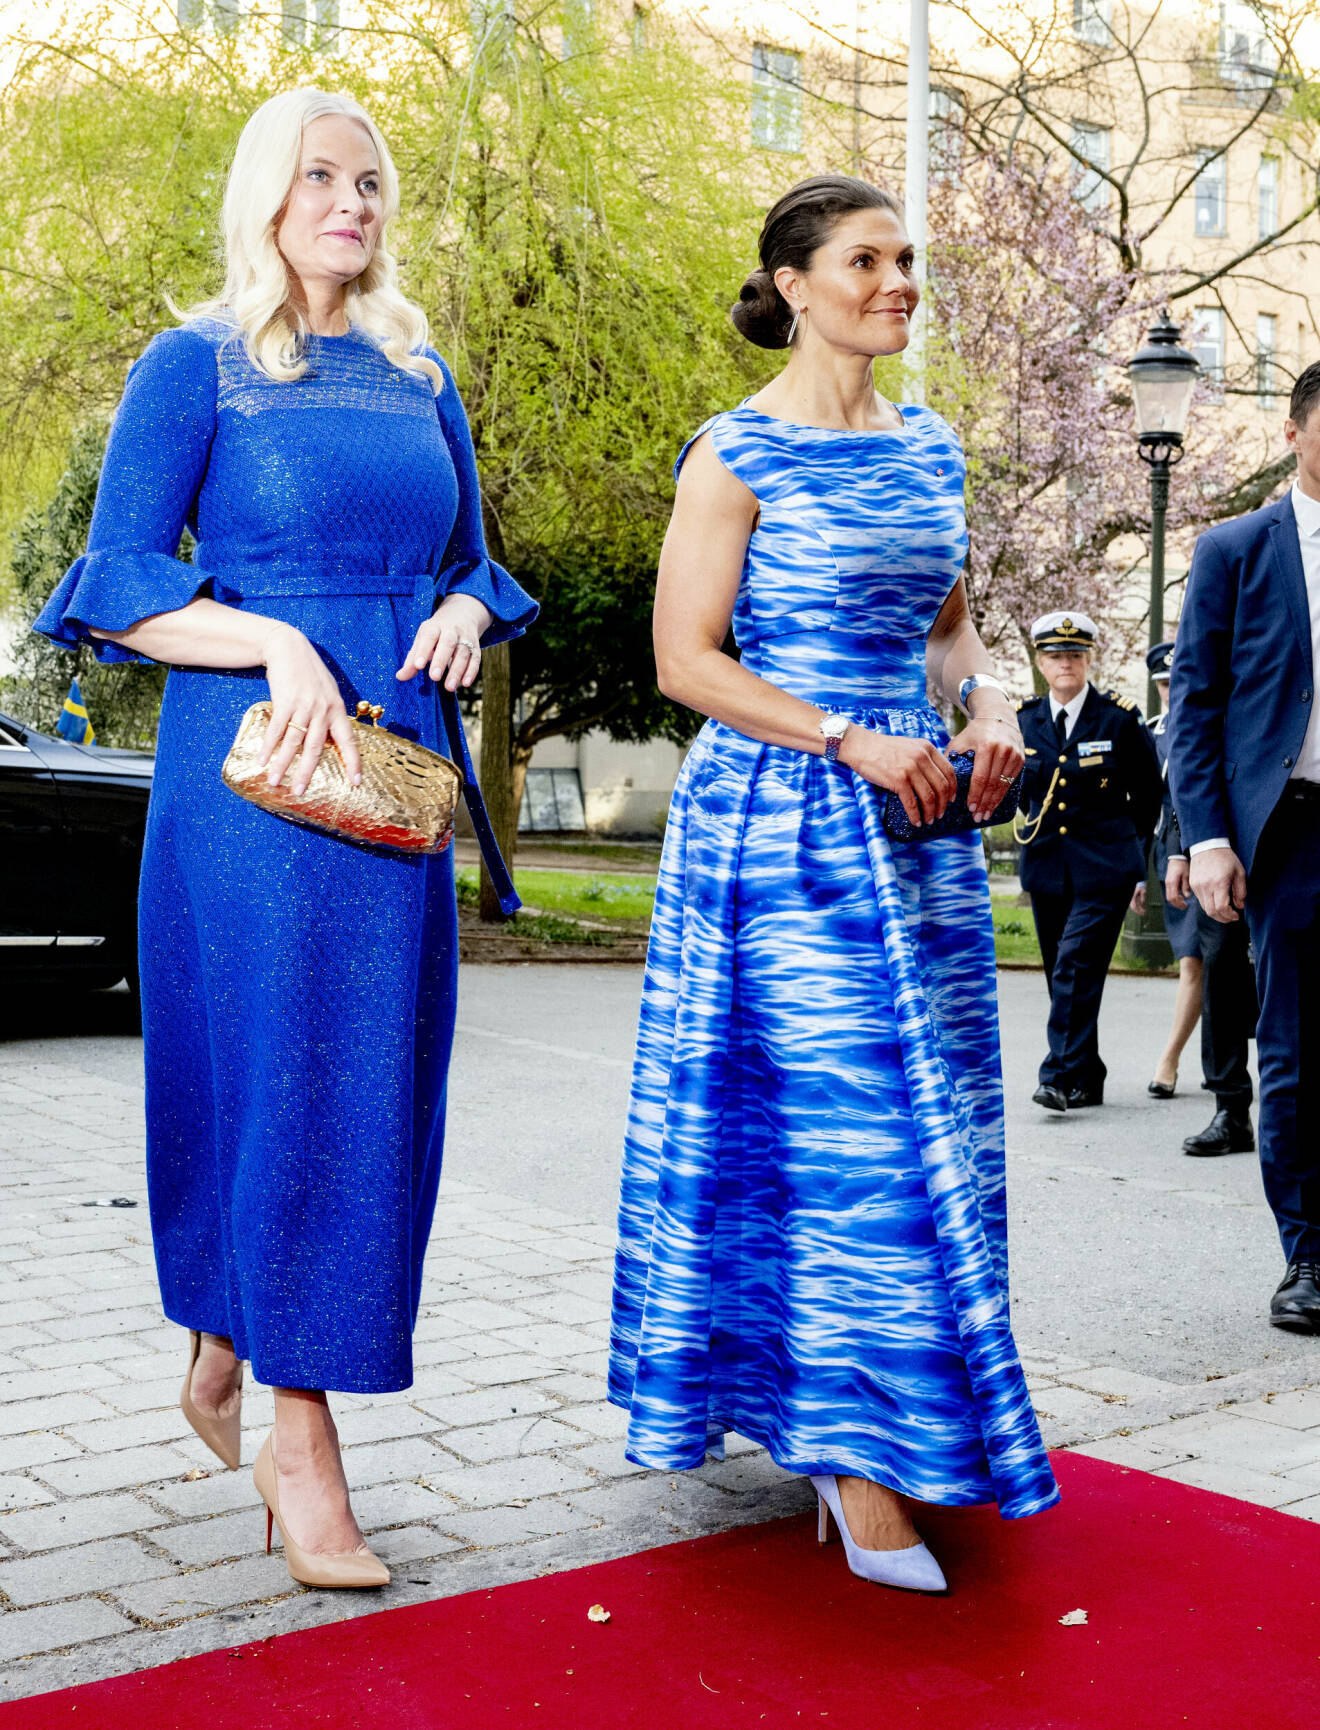 Kronprinsessan Mette-Marit och kronprinsessan Victoria på norska ambassadörens middag